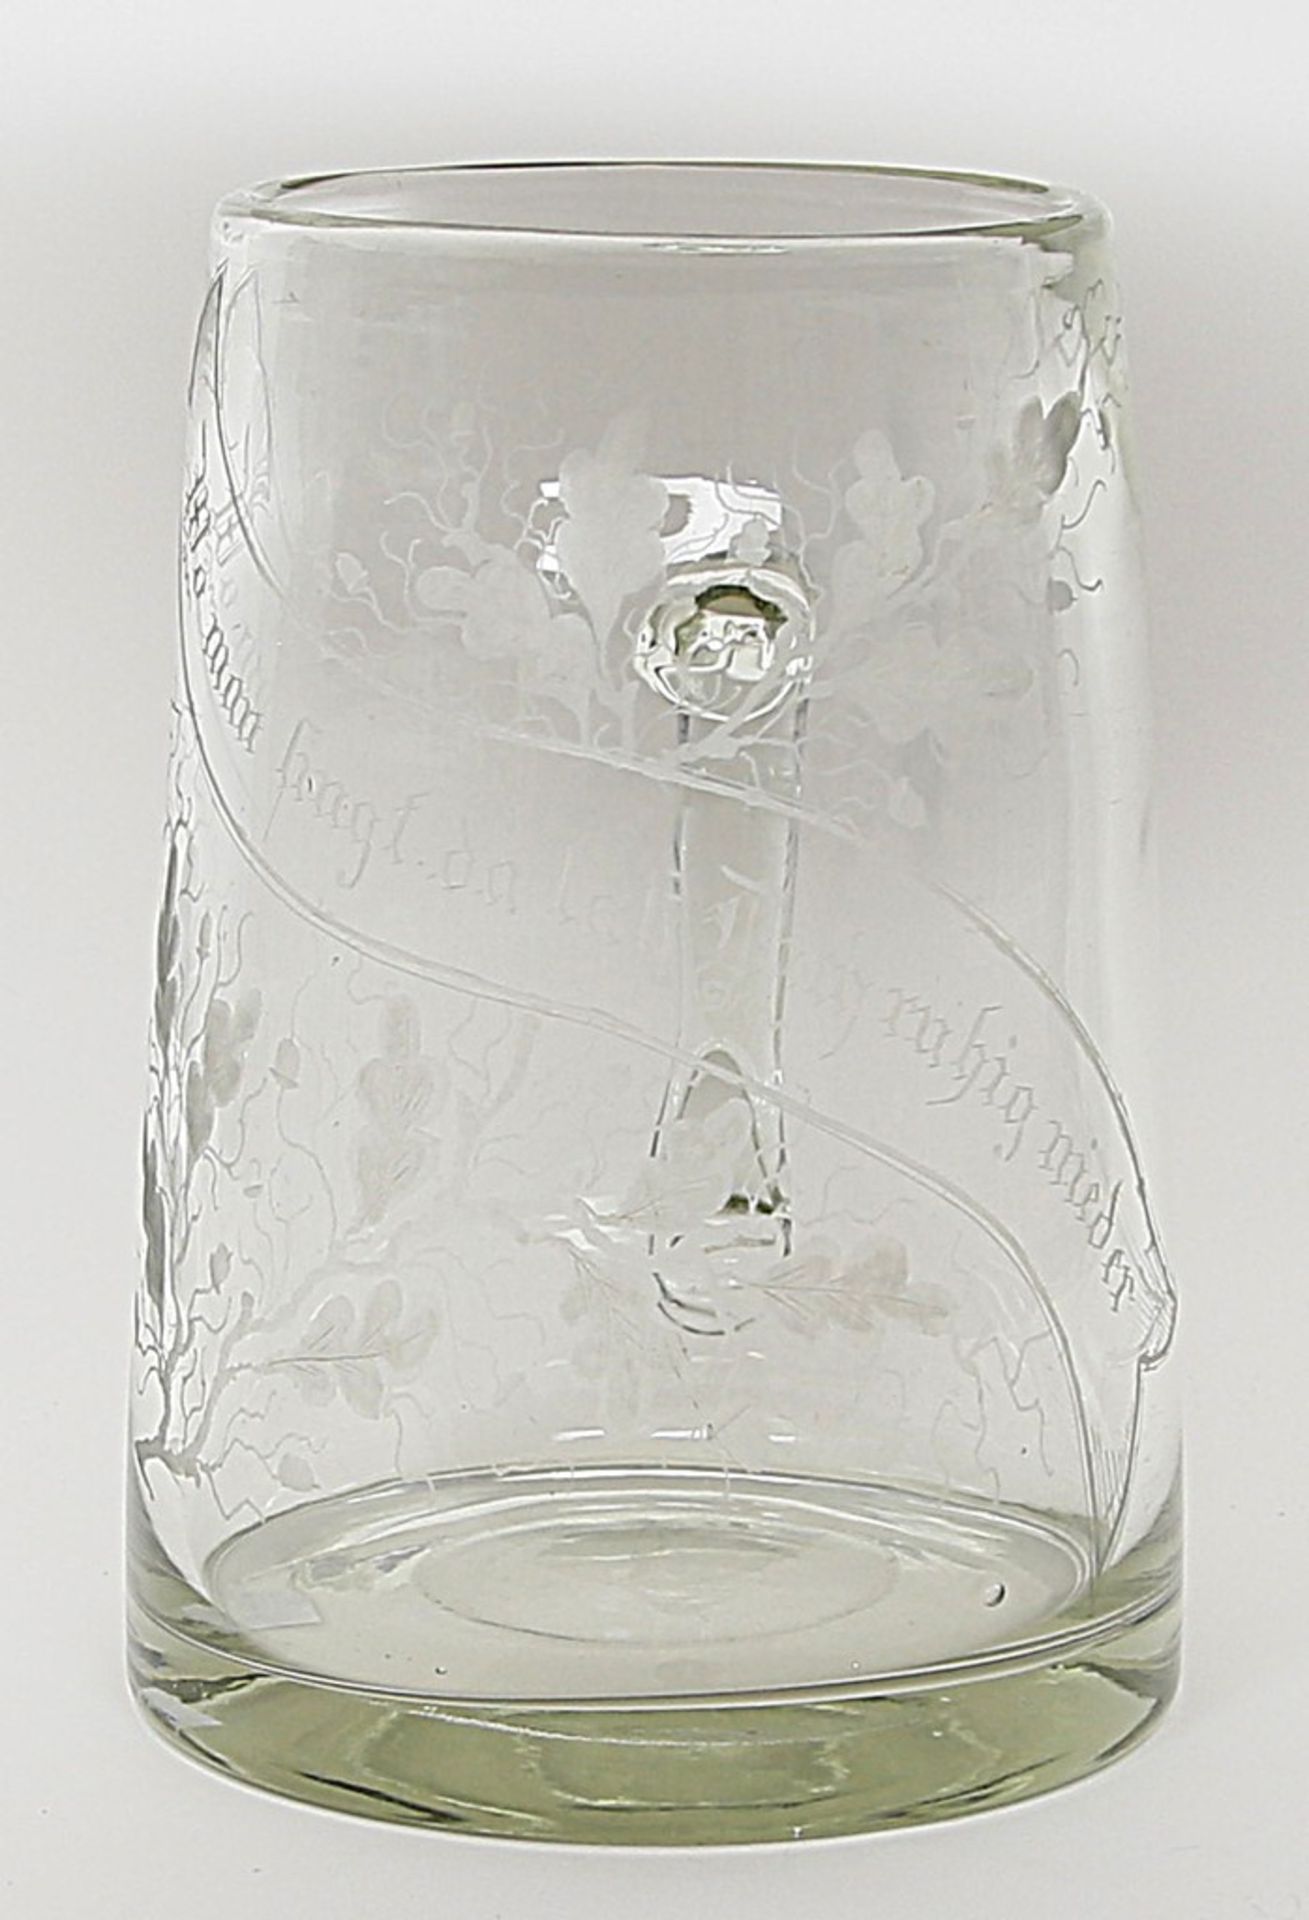 Schau-Bierkrug, 4 L. Farbloses, dickwandiges Glas. Leicht konische Wandung mit Ohrenhe